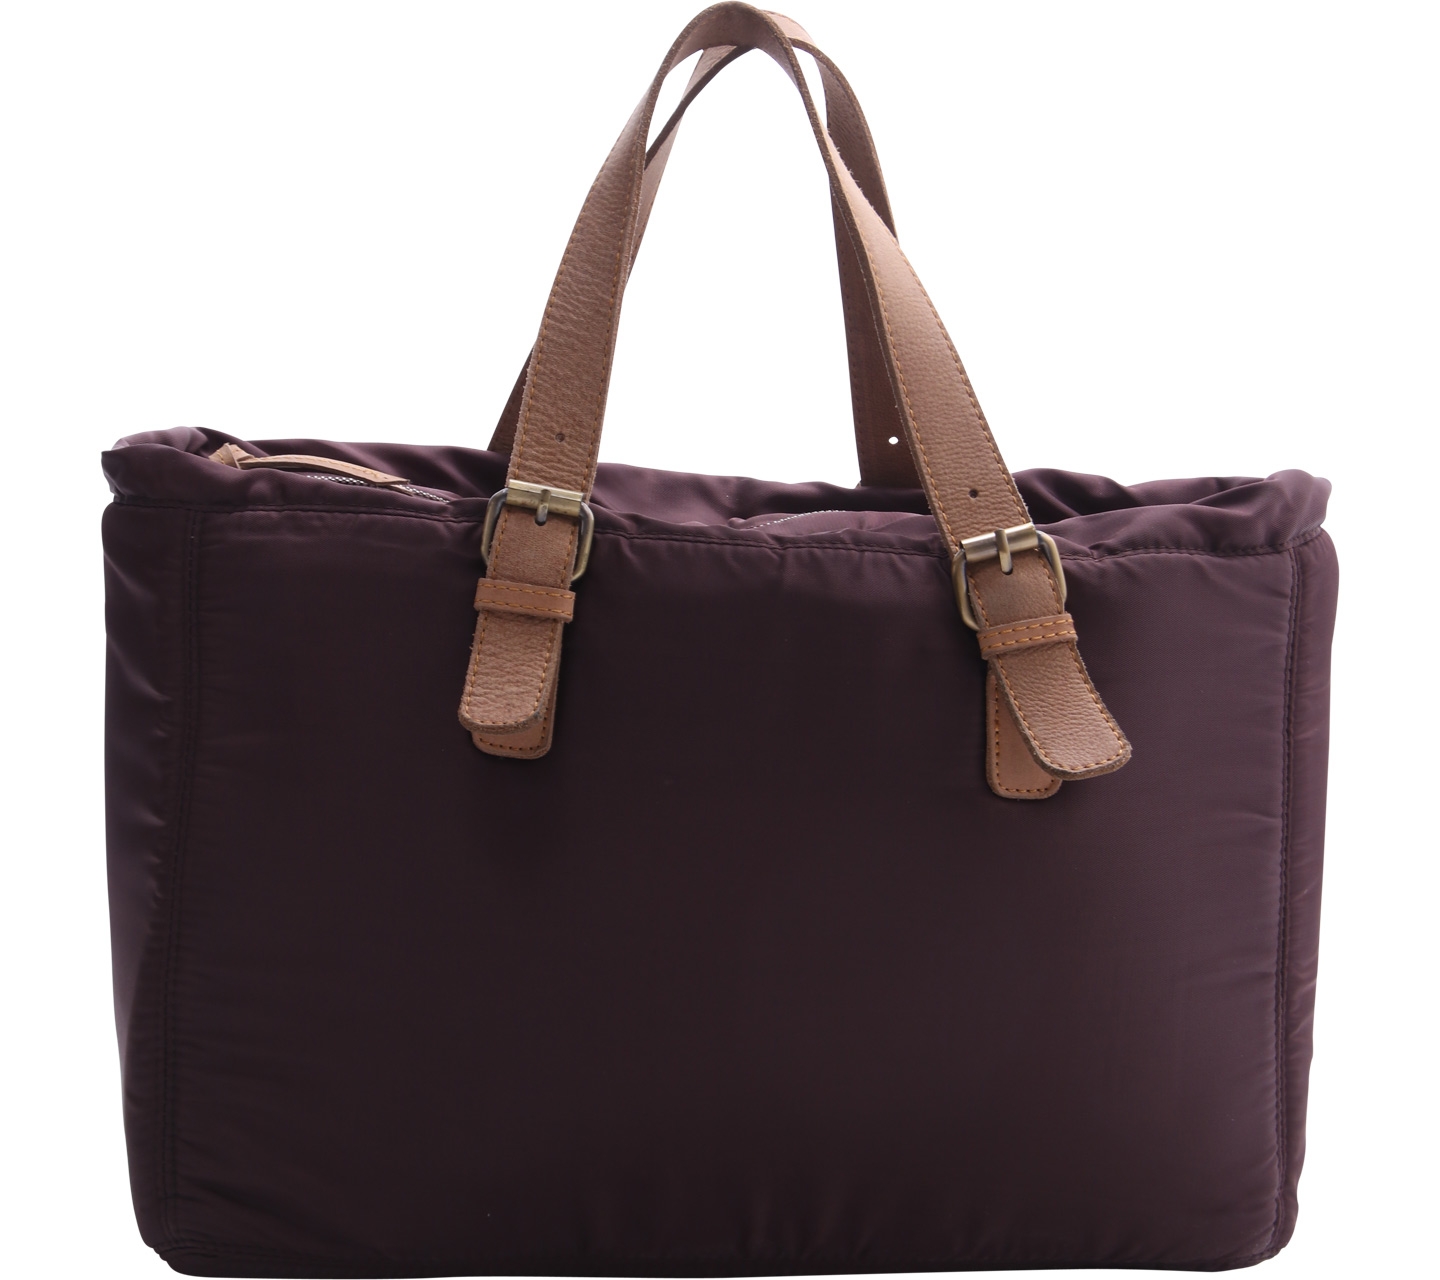 Moozee Brown Handbag